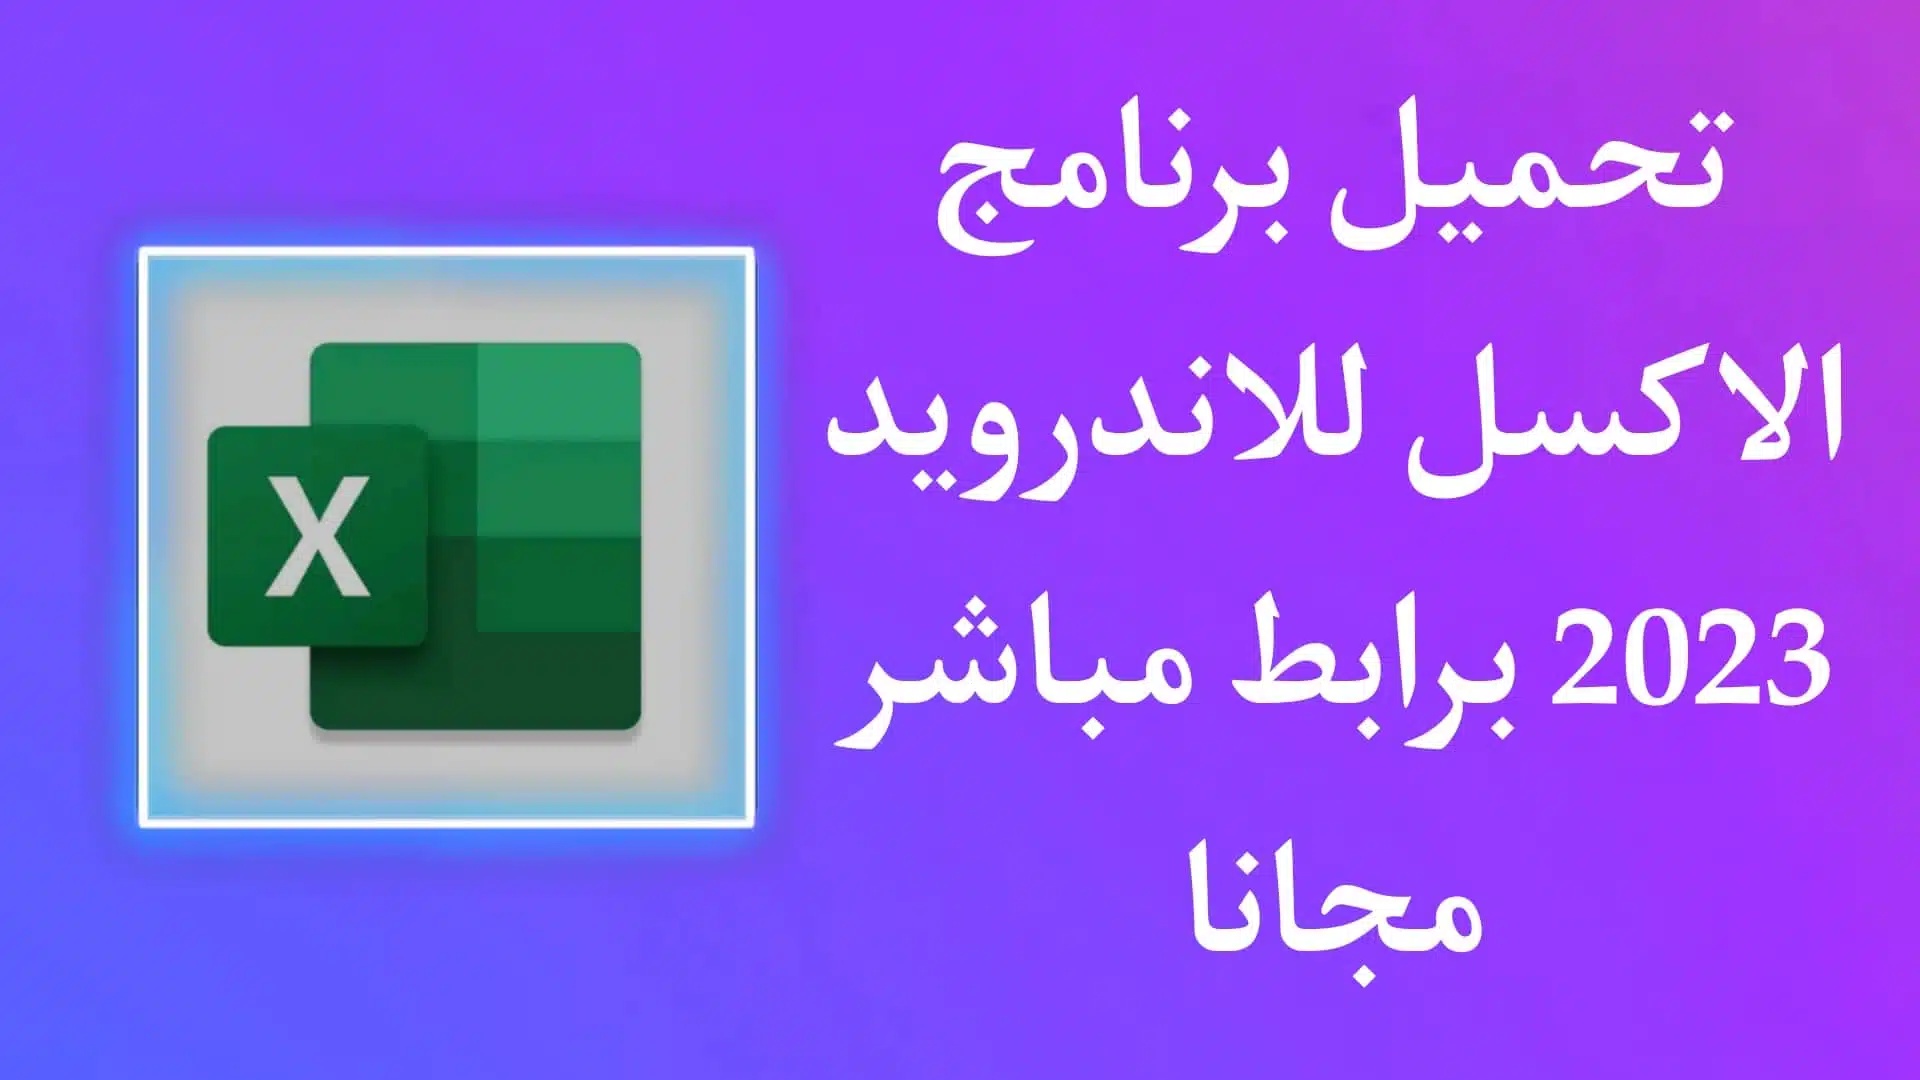 تنزيل برنامج اكسل باللغة العربية Excel للاندرويد 2023 مجانا